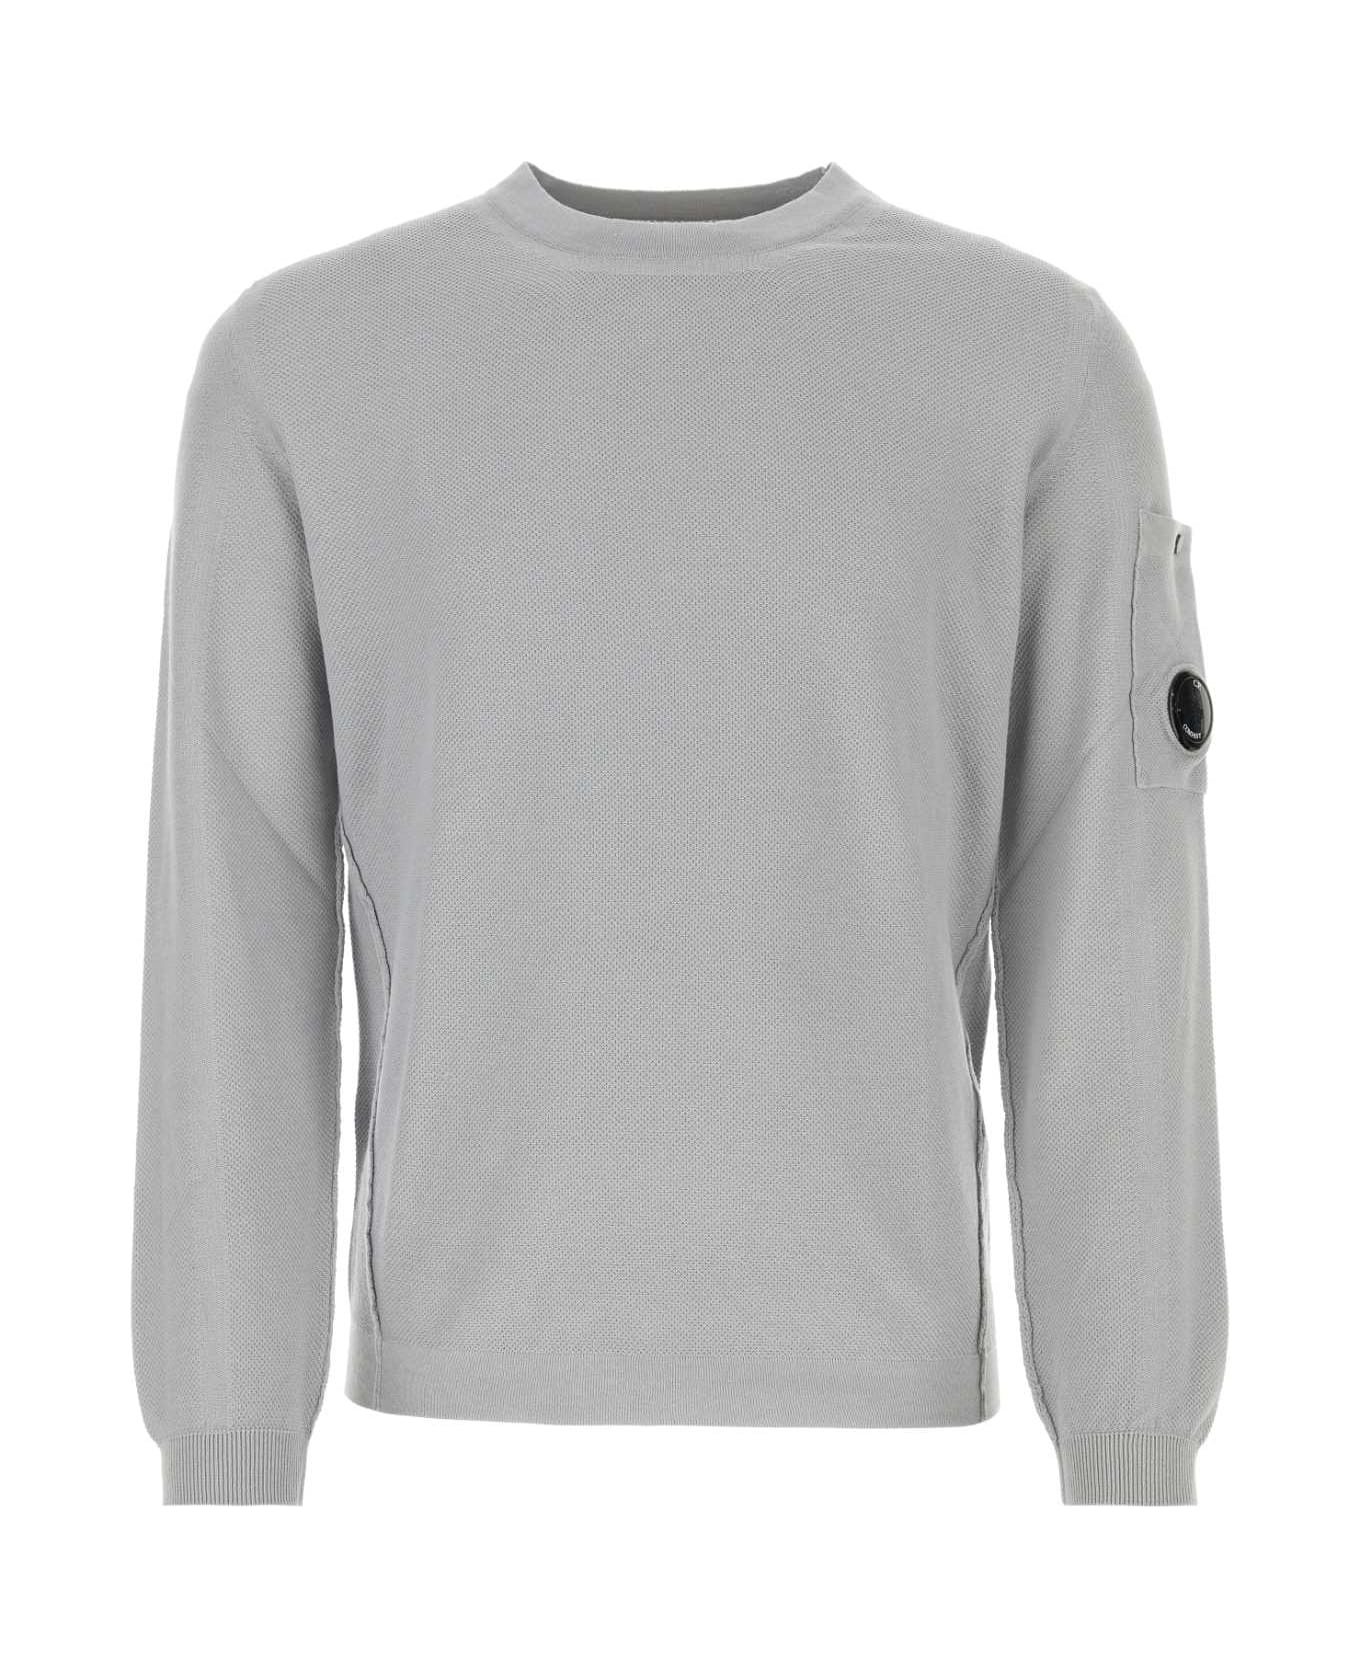 C.P. Company Grey Cotton Sweater - DRIZZLE